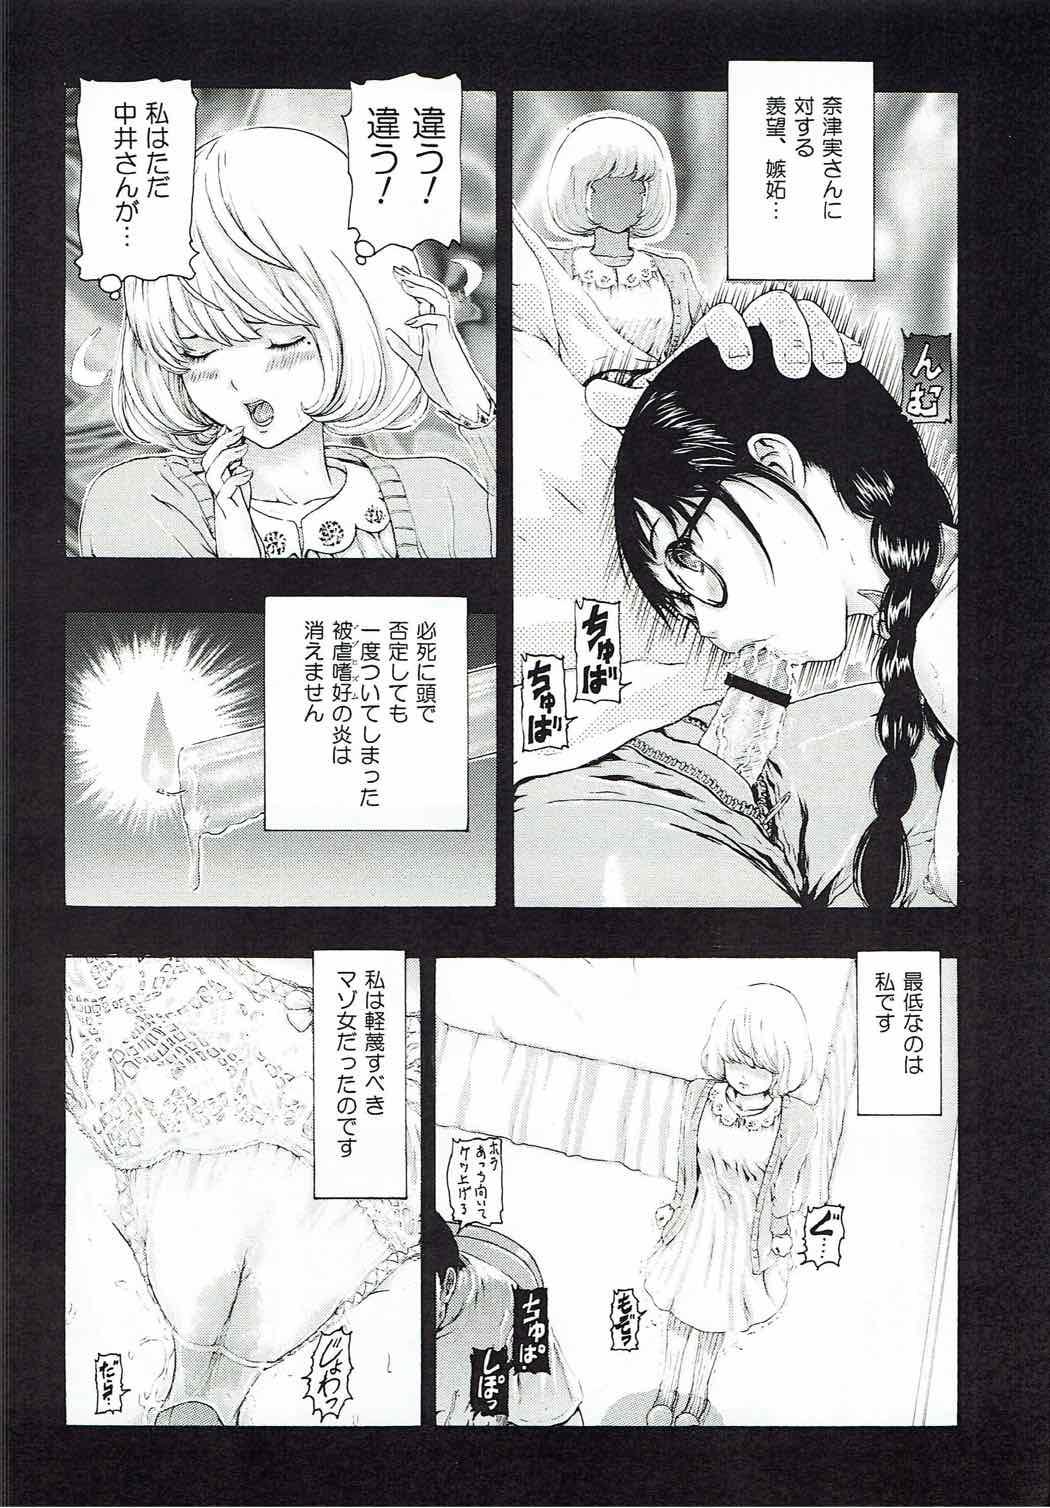 [け ゚ぴけ ゚ぴ(ぬャカな)] MANKOKU漫画家(とアシスタント)残酷物語 (バクマン。) 18